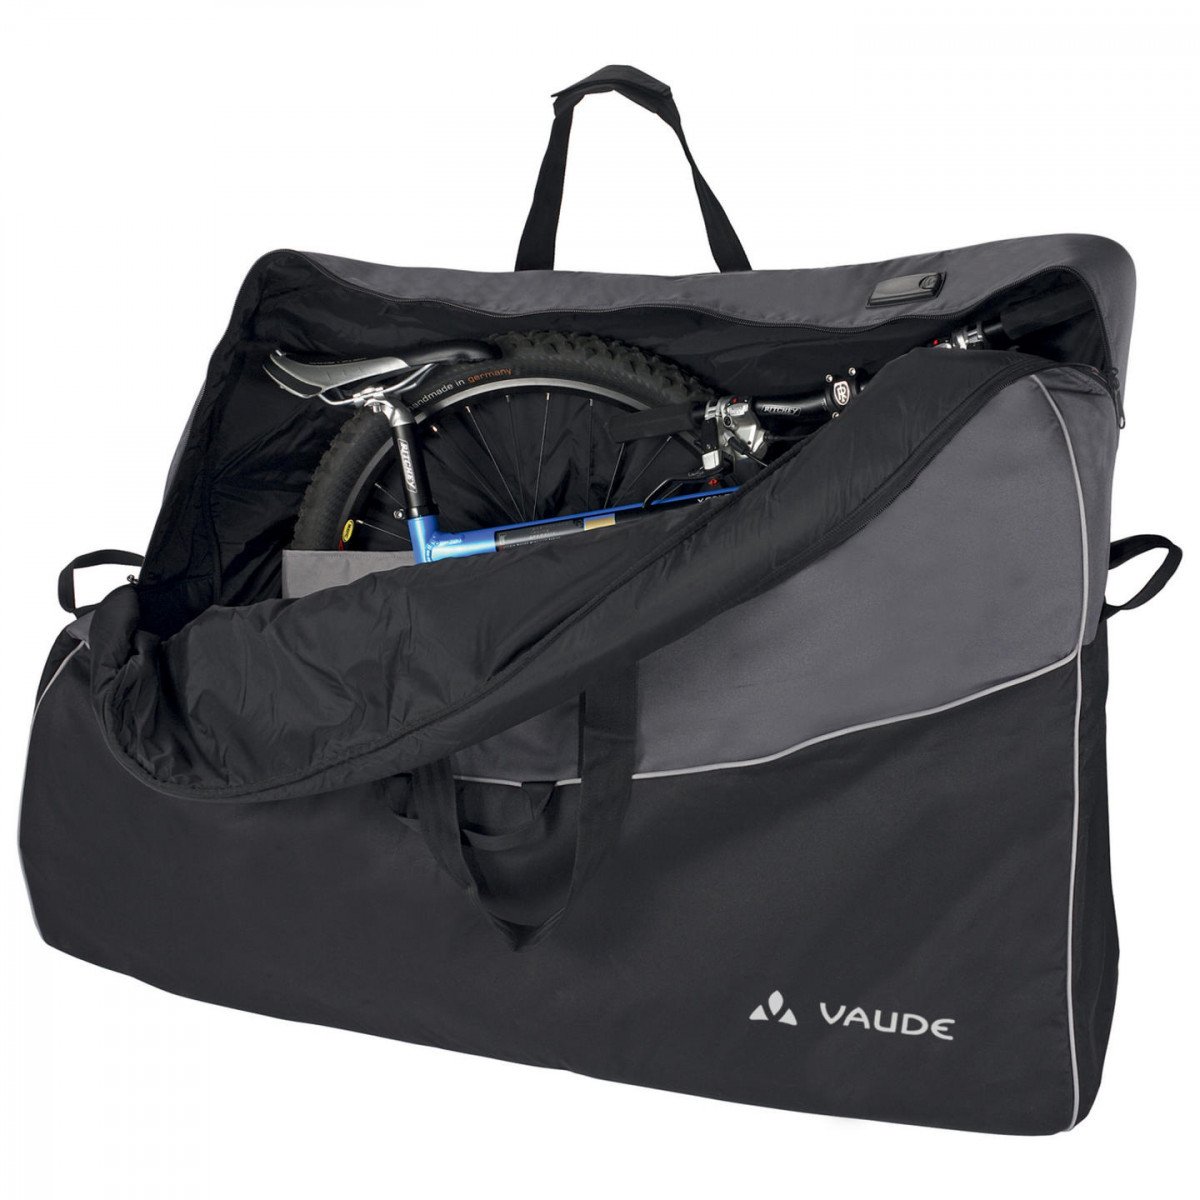 Велосипедная сумка VAUDE Big Bike Bag Pro сумка транспортировочная, размеры: 85x130x28см, 15257 велосипедная сумка vaude karakorum объем 64 л размеры 58х60х32 см 10828